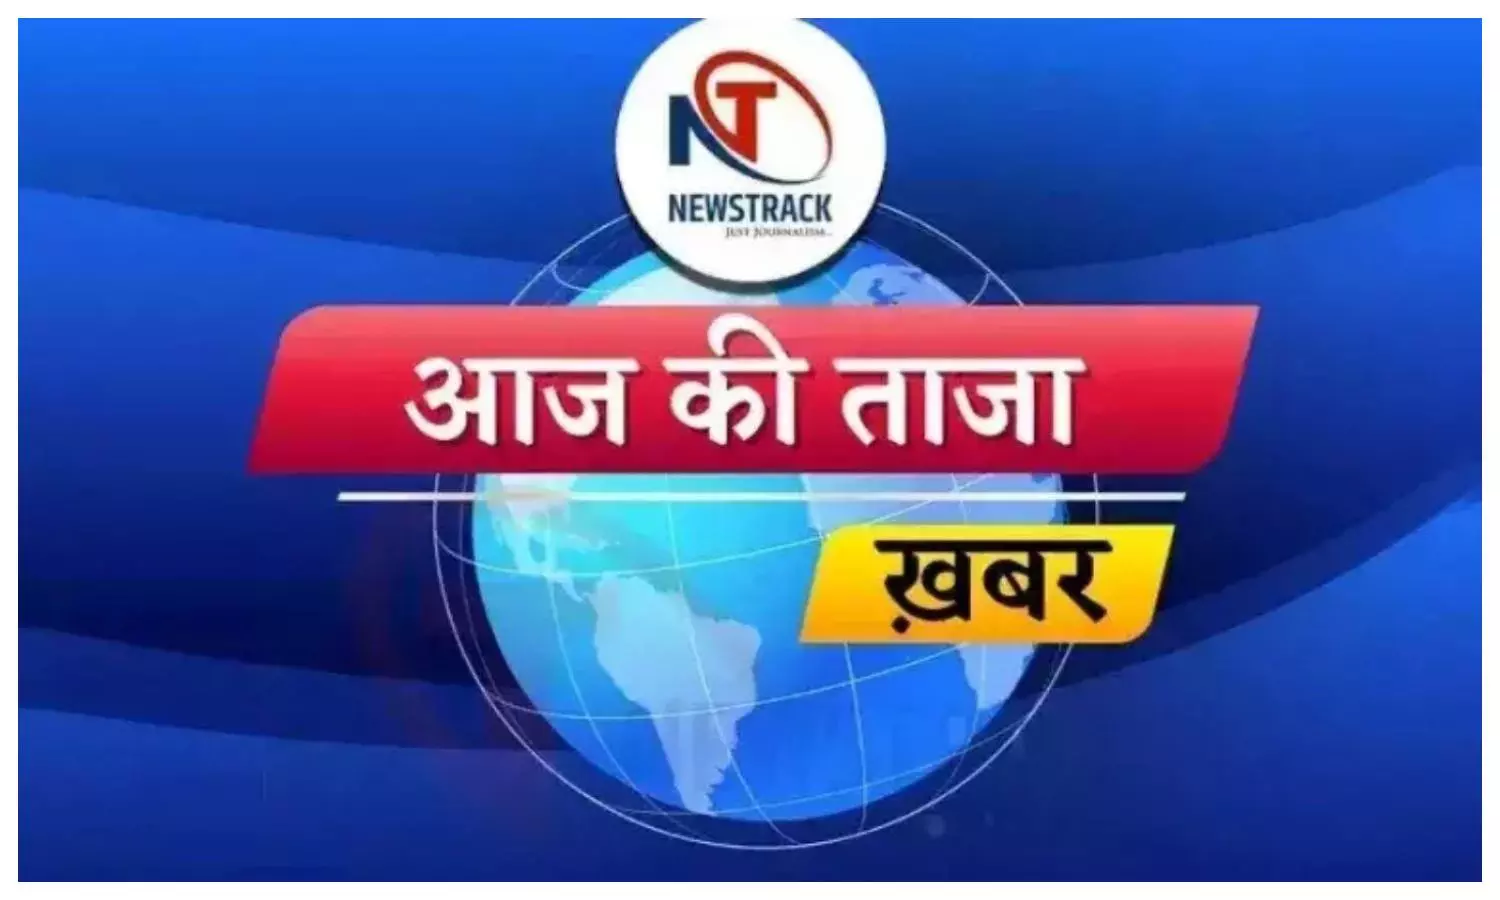 aaj ki taza khabar, up latest news in hindi, desh duniya ki khabar, newstrack samachar